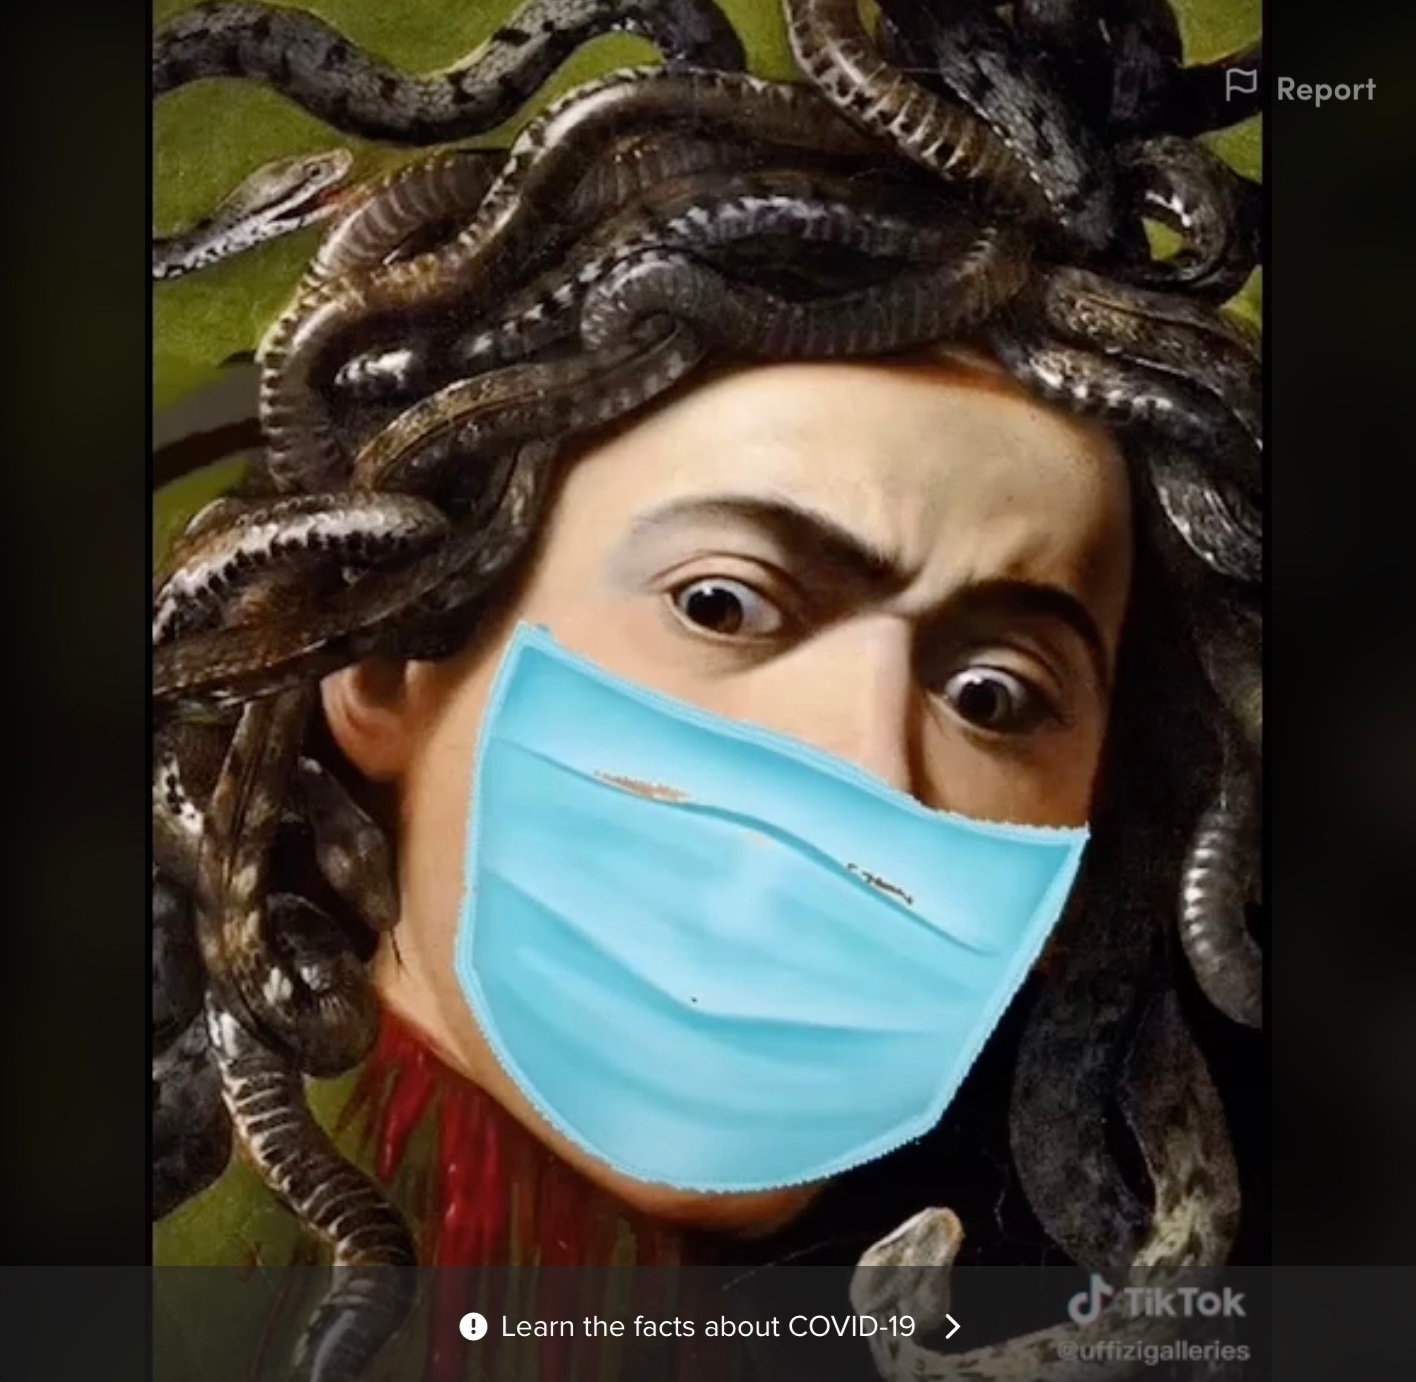 우피치 미술관의 ‘틱톡’ 영상 속 코로나 마스크를 쓴 메두사 그림. 뉴욕타임스 홈페이지 캡처.